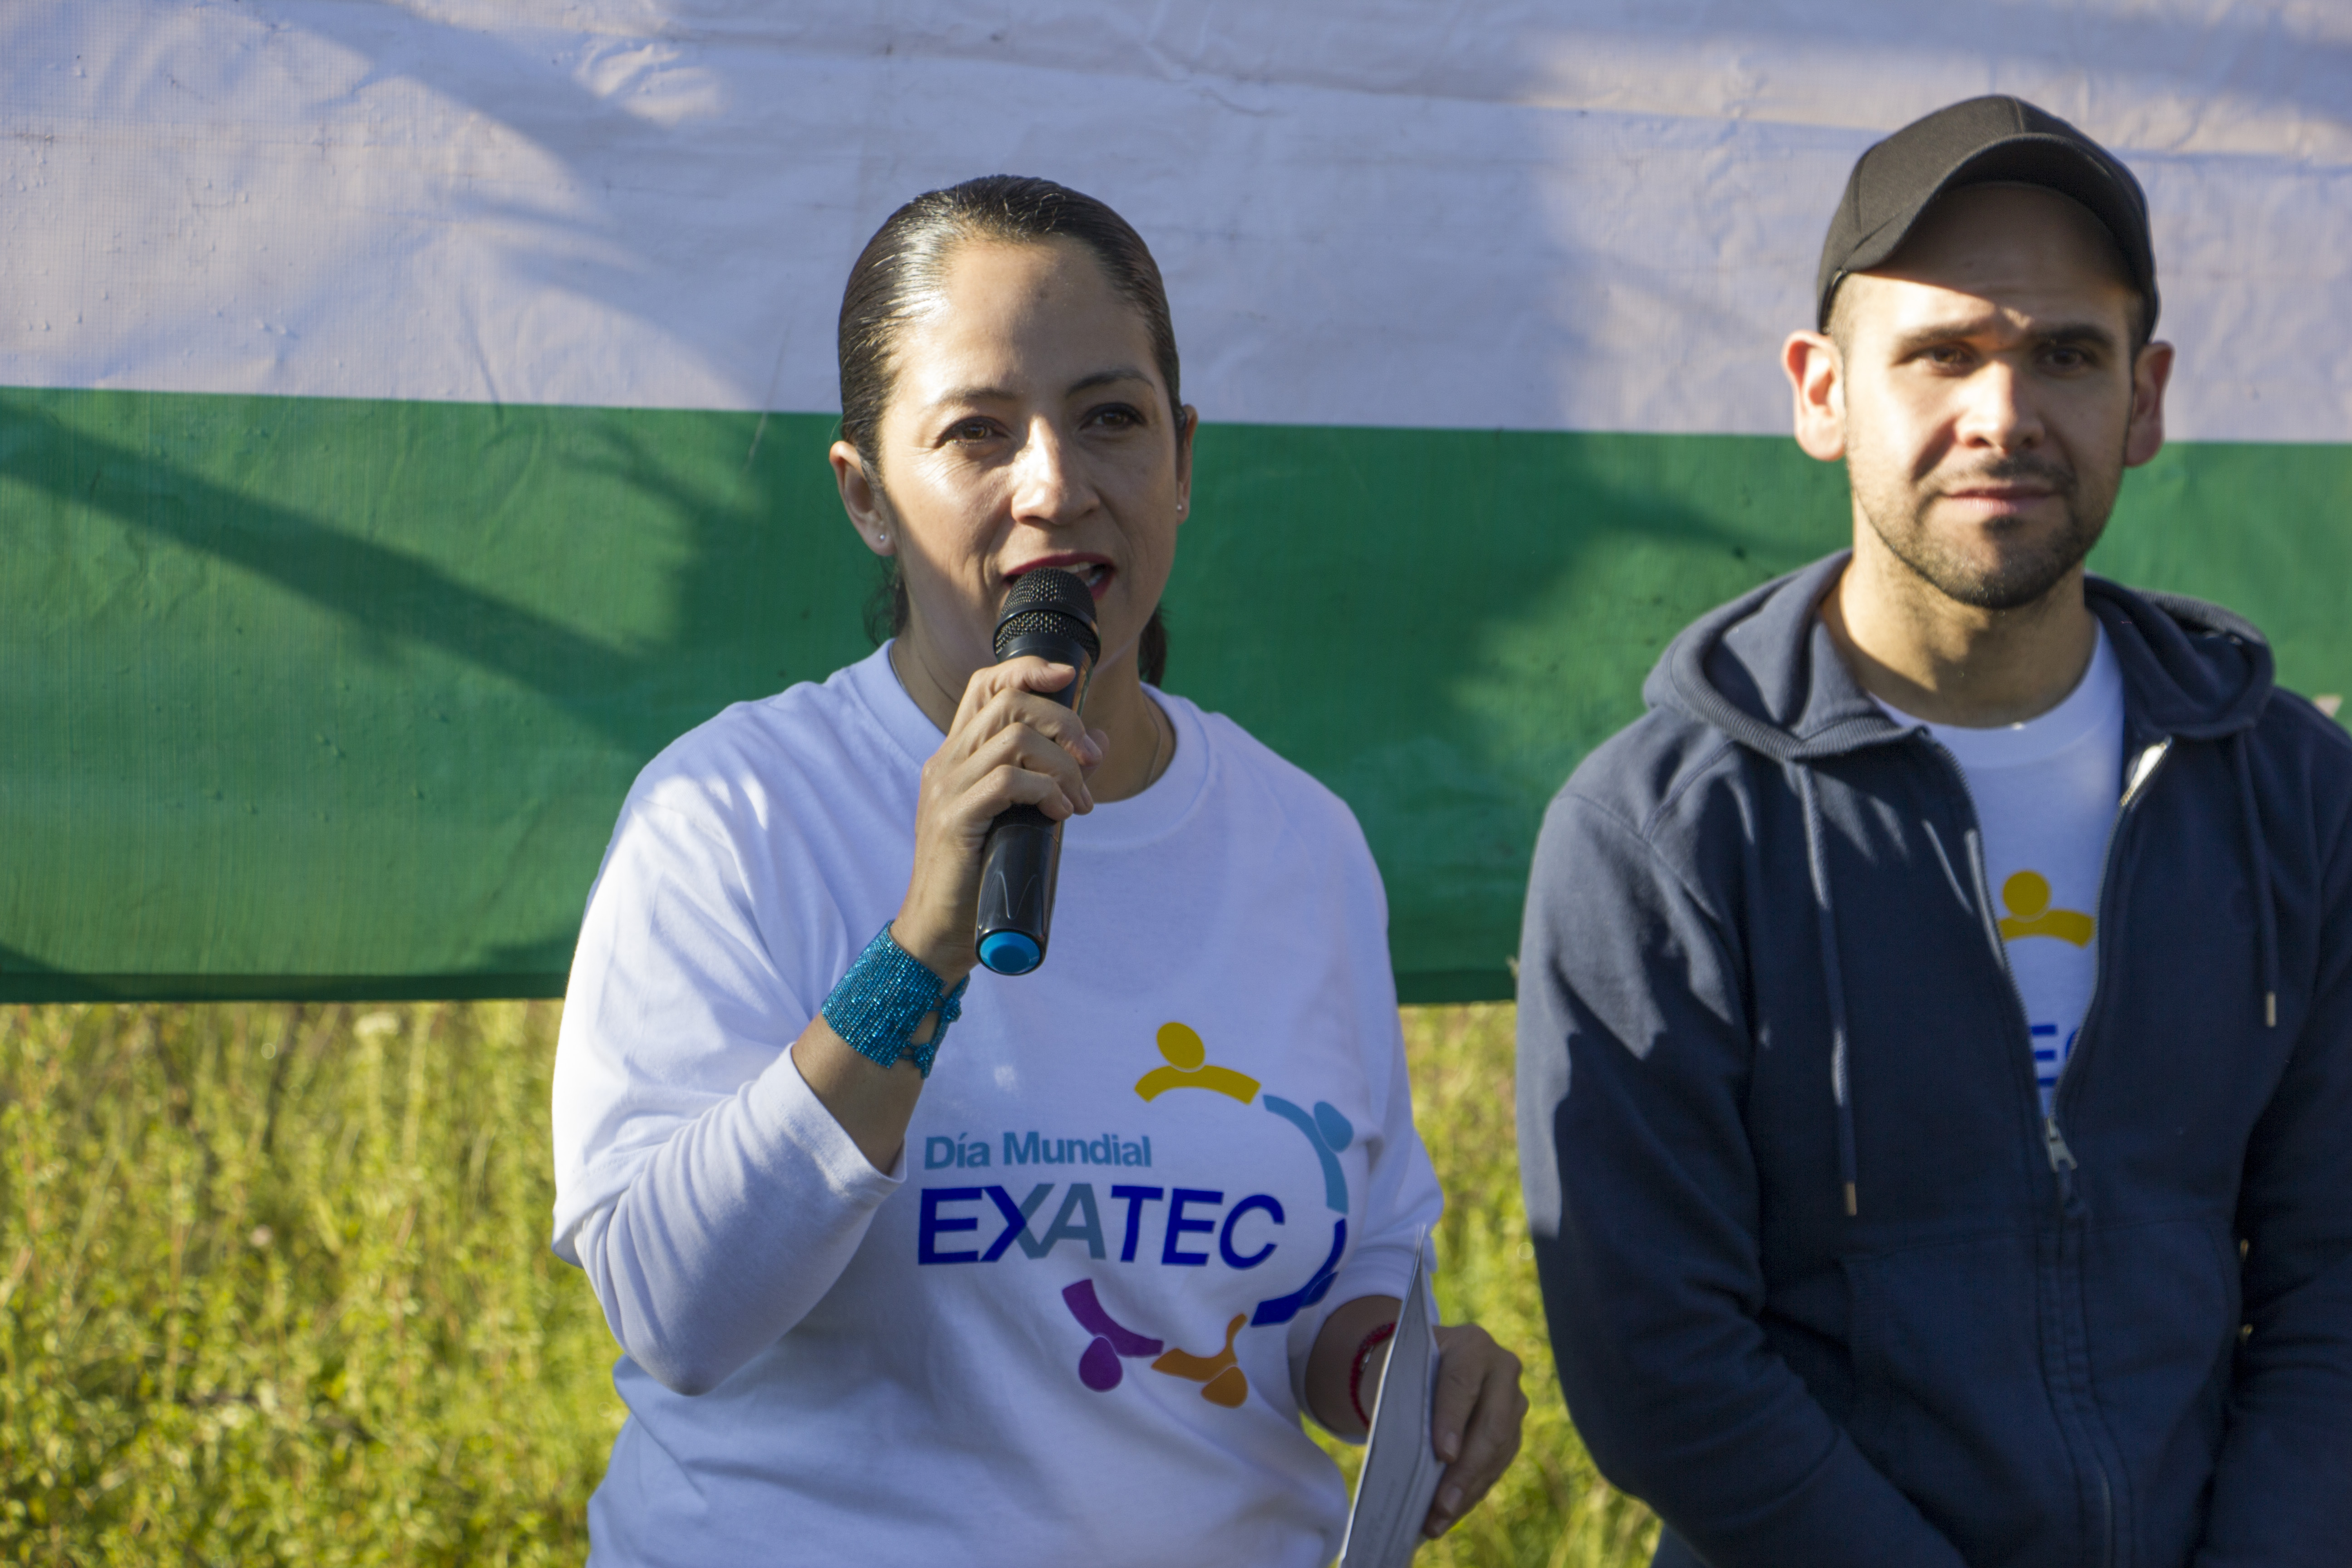 Inauguración Día Mundial EXATEC 2018 en Toluca